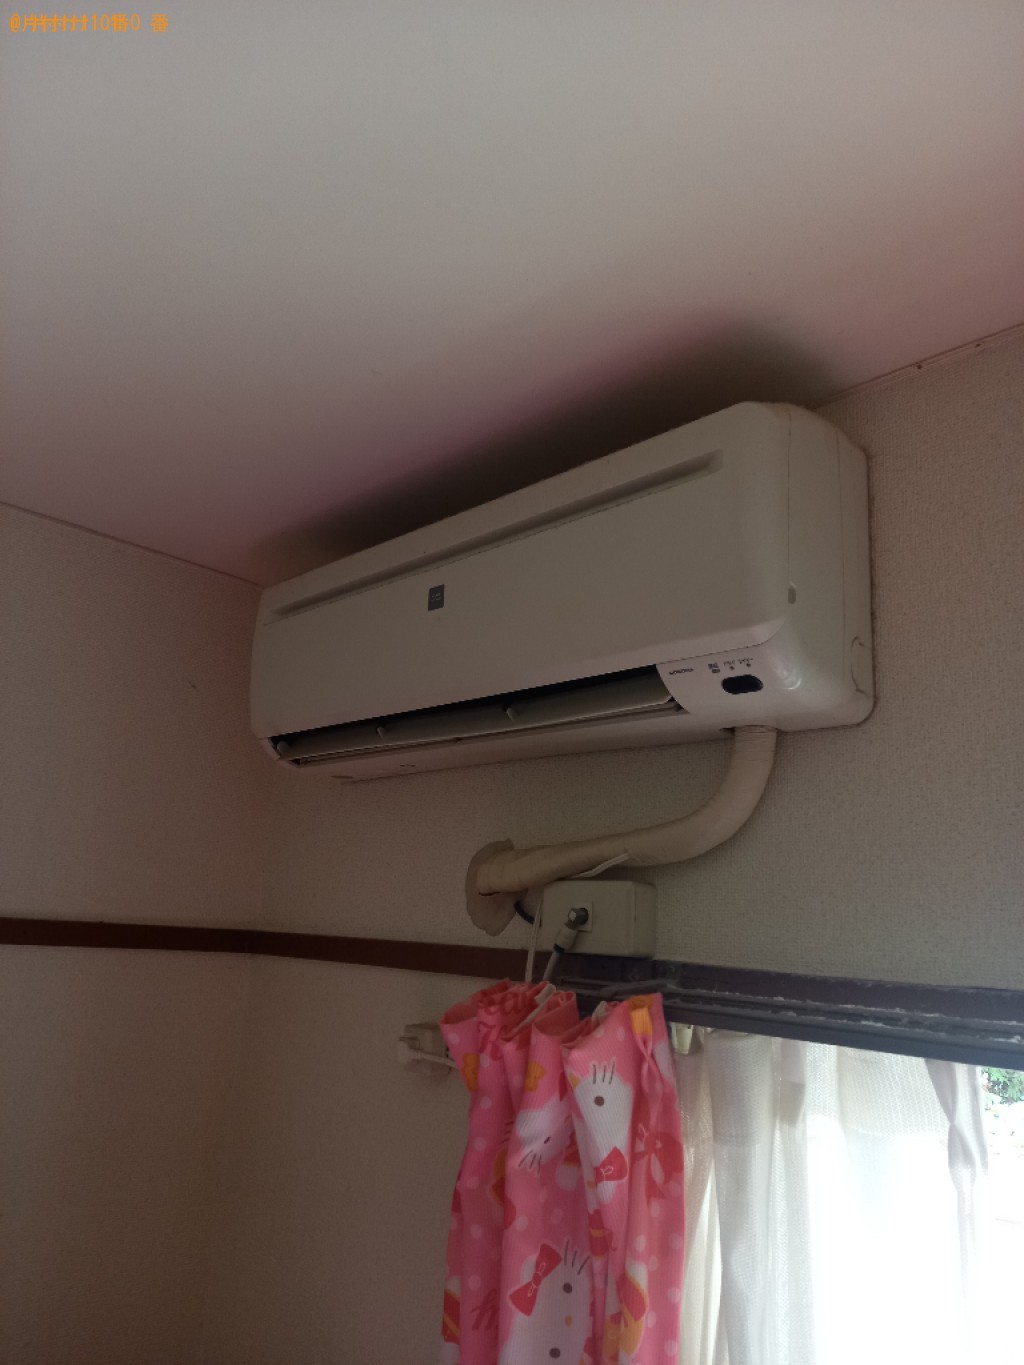 【世田谷区】家庭用エアコンの出張不用品回収・処分ご依頼